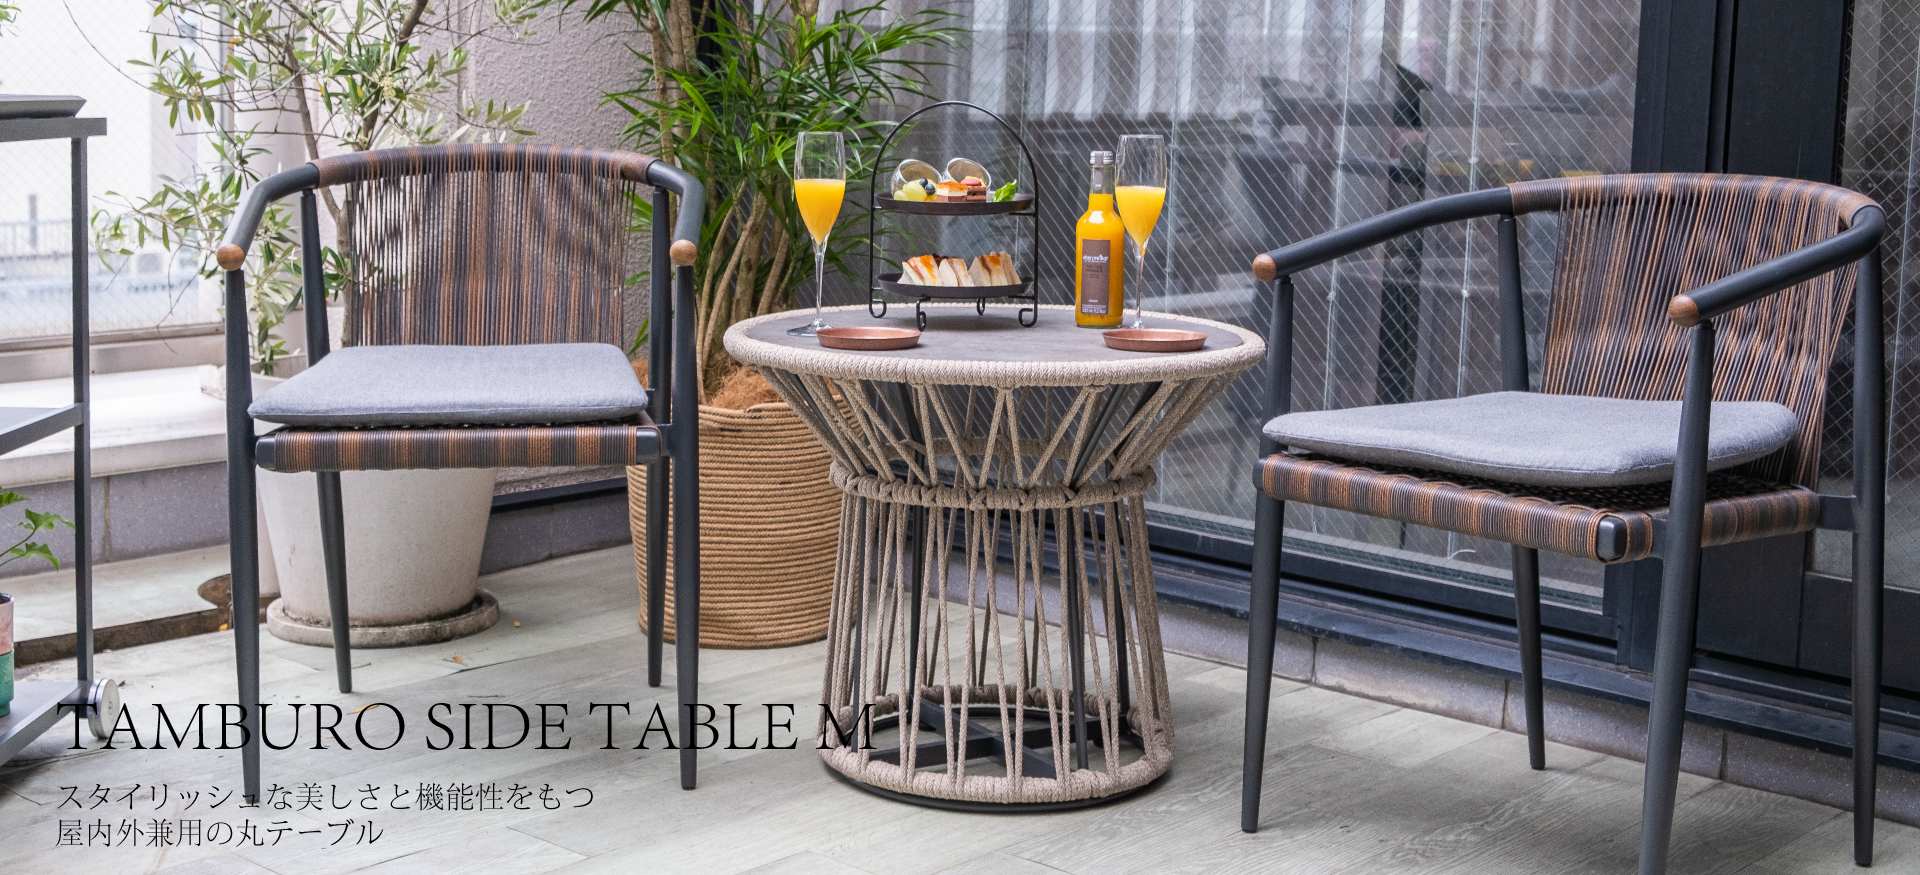 スタイリッシュな美しさと機能性をもつ屋内外兼用の丸テーブルタンブローサイドテーブルM